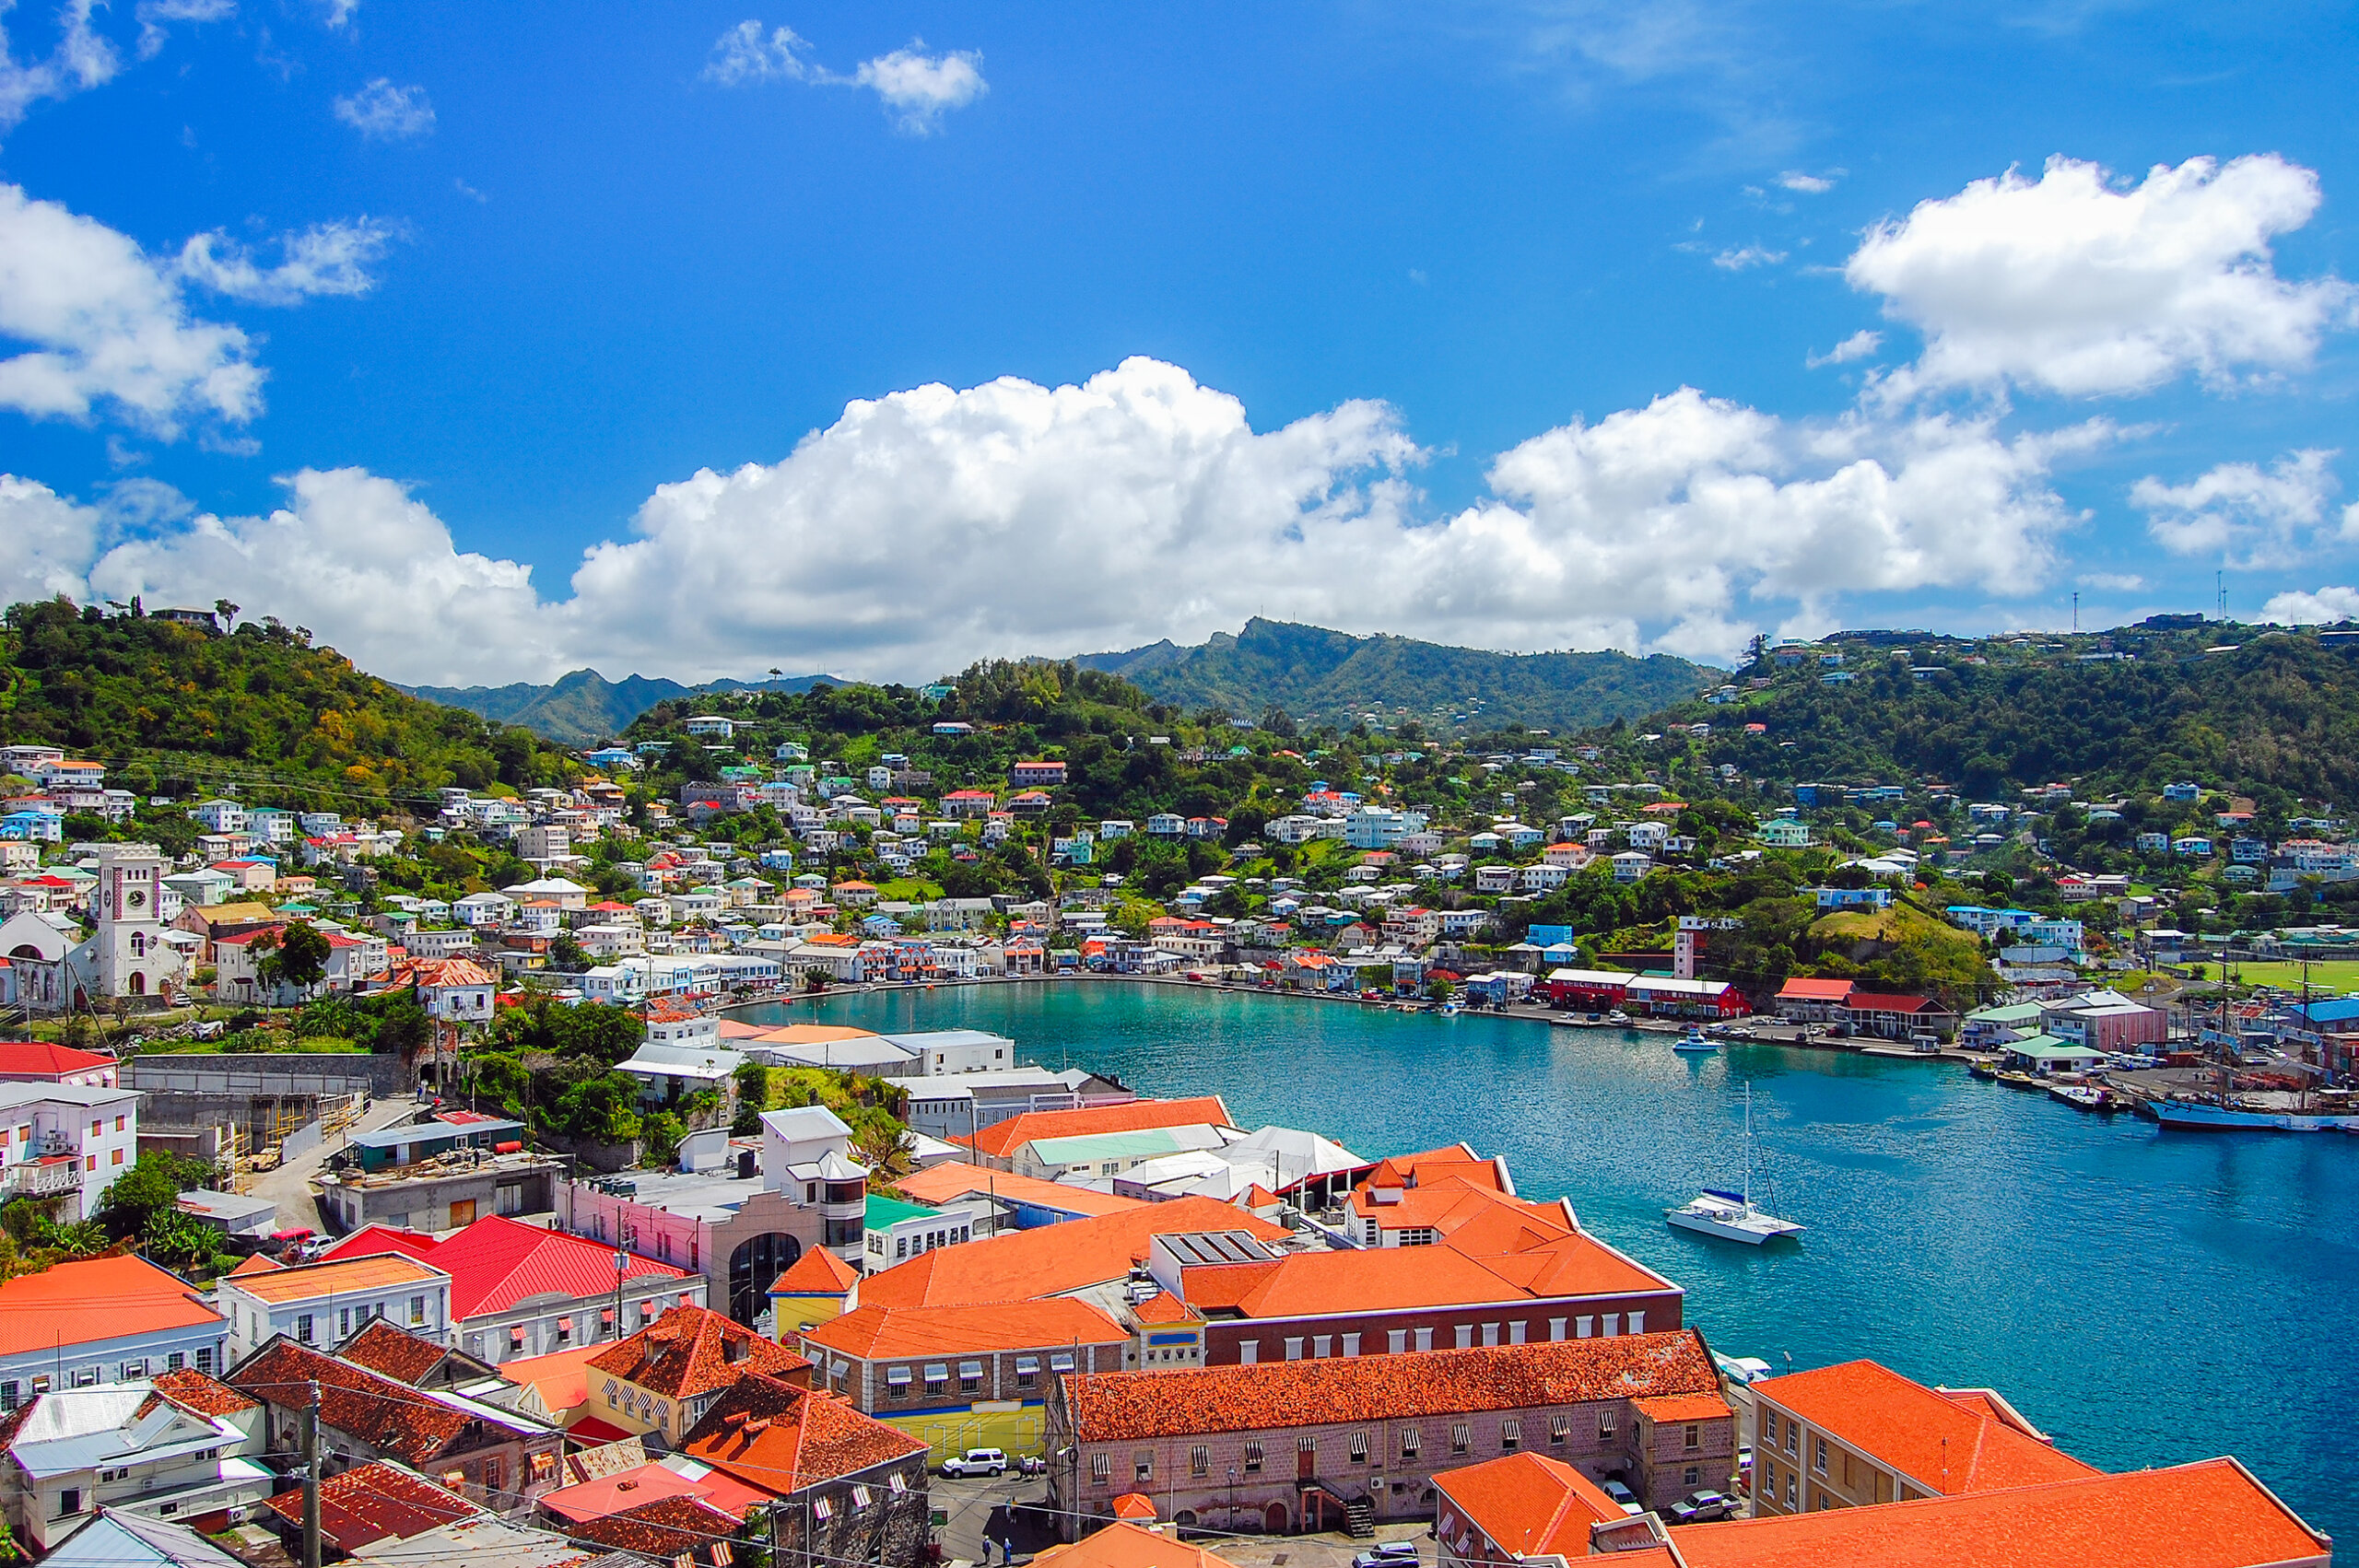 Widok na miasto Saint George, stolica wyspy Grenada, Karaiby regionu Małych Antyli